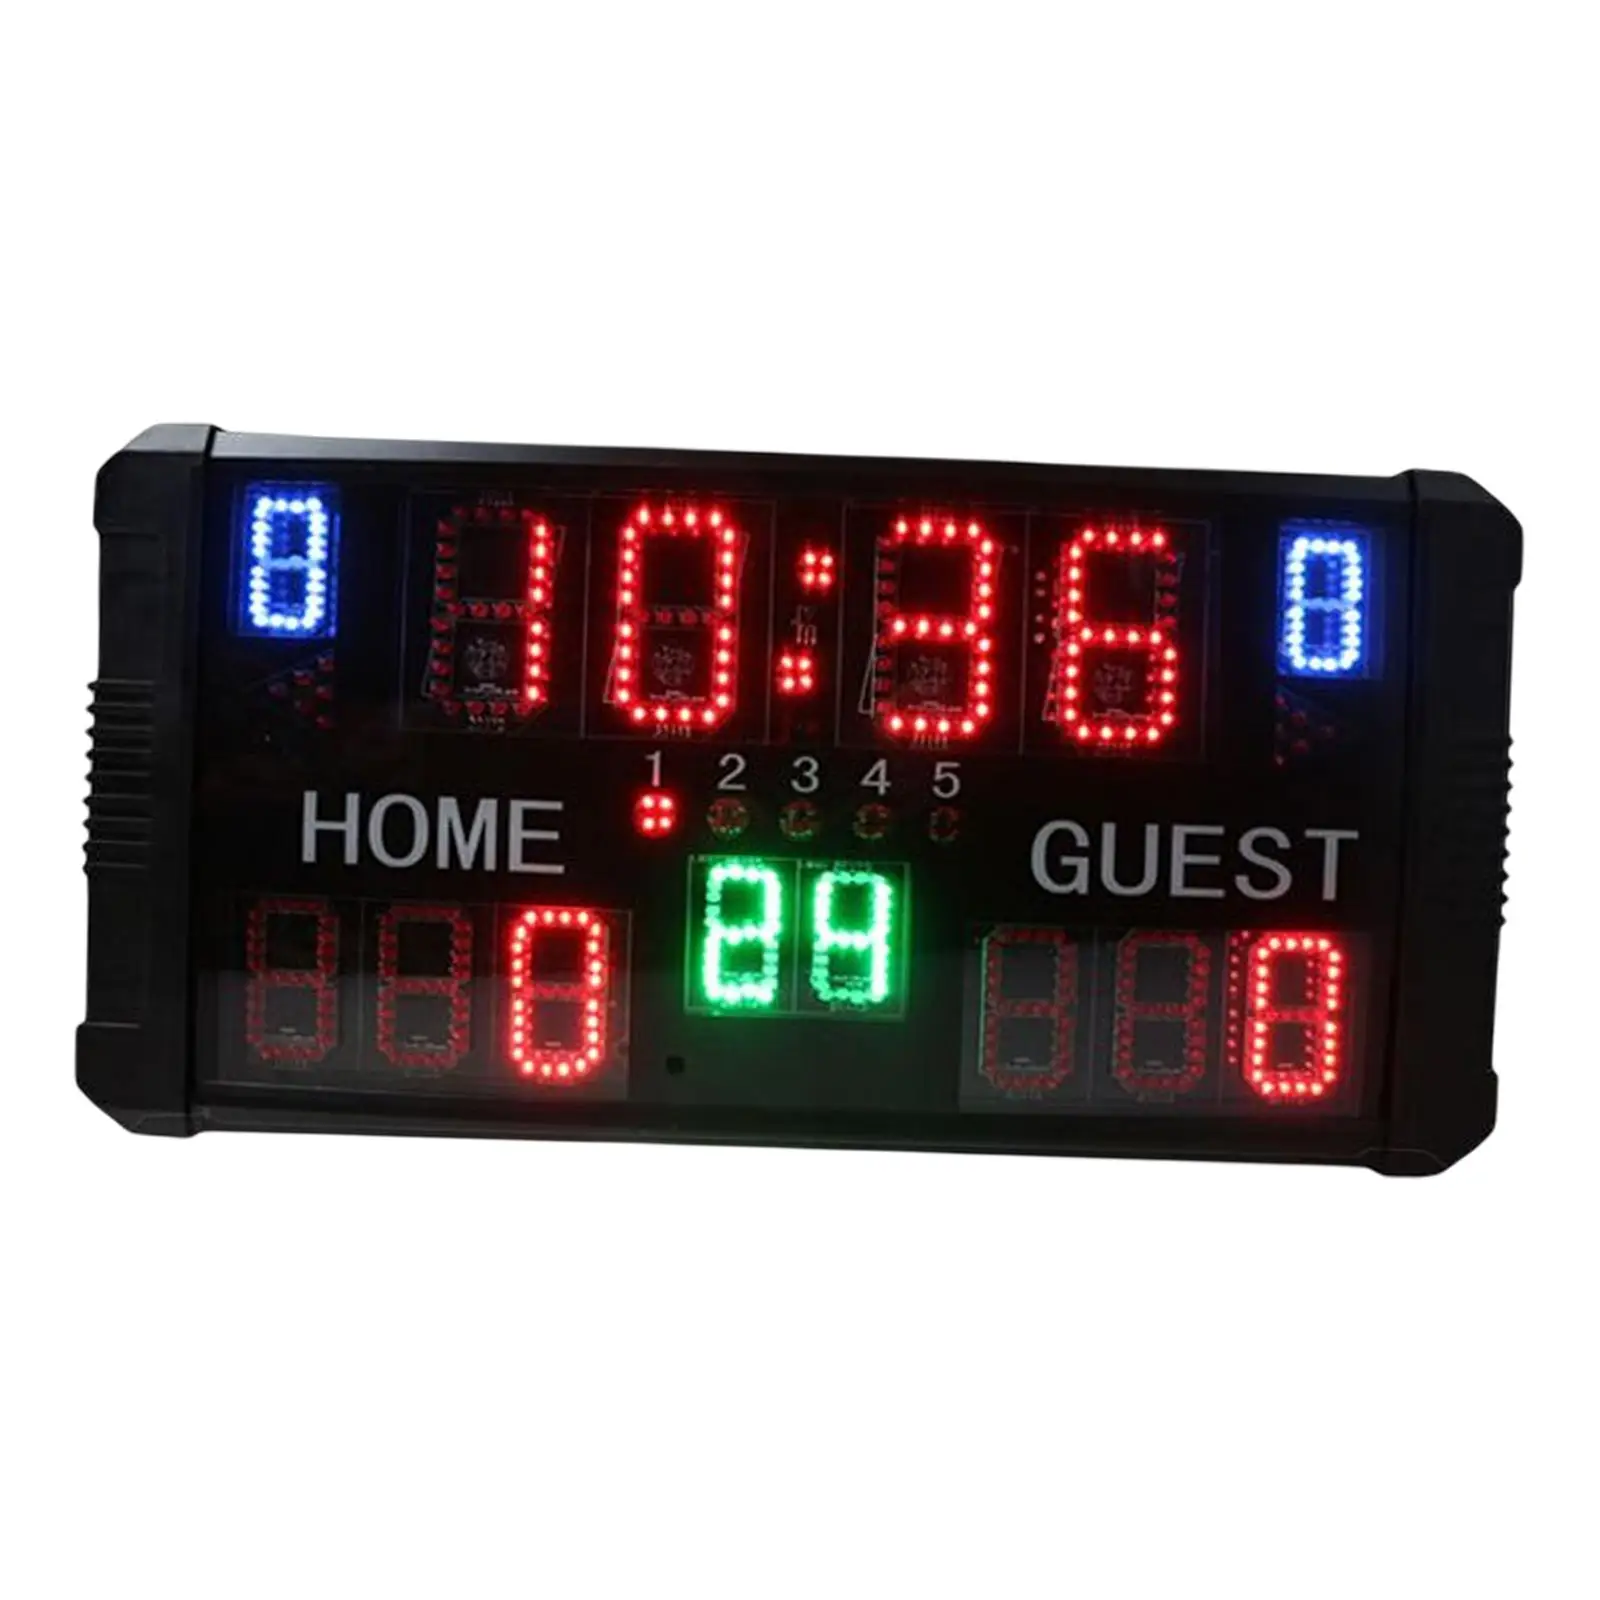 Electronic Digital Scoreboard Professional Wrestling Sports Score Keeper